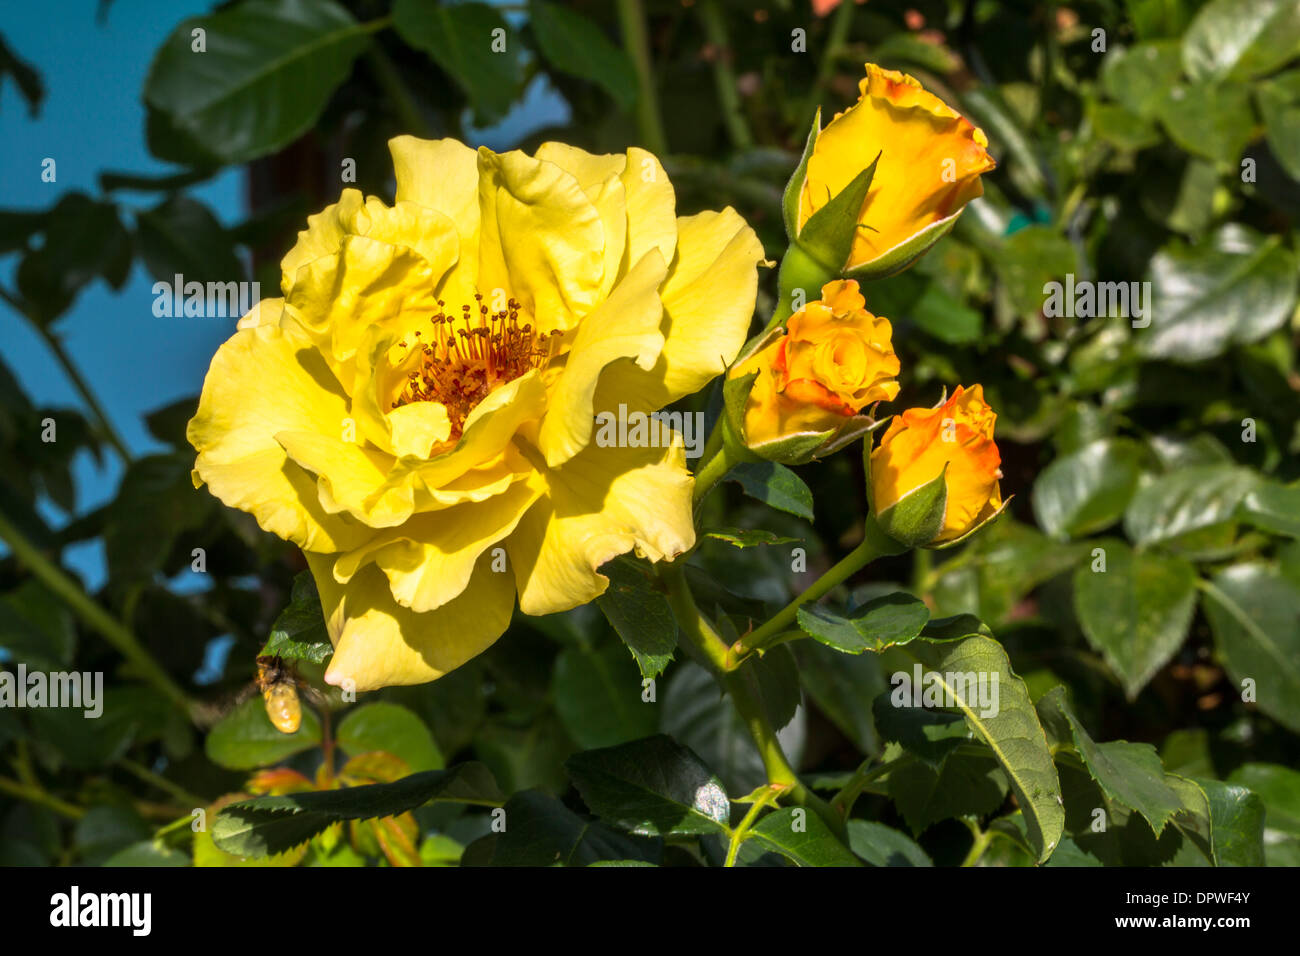 Single beautiful yellow rose Stock Photo